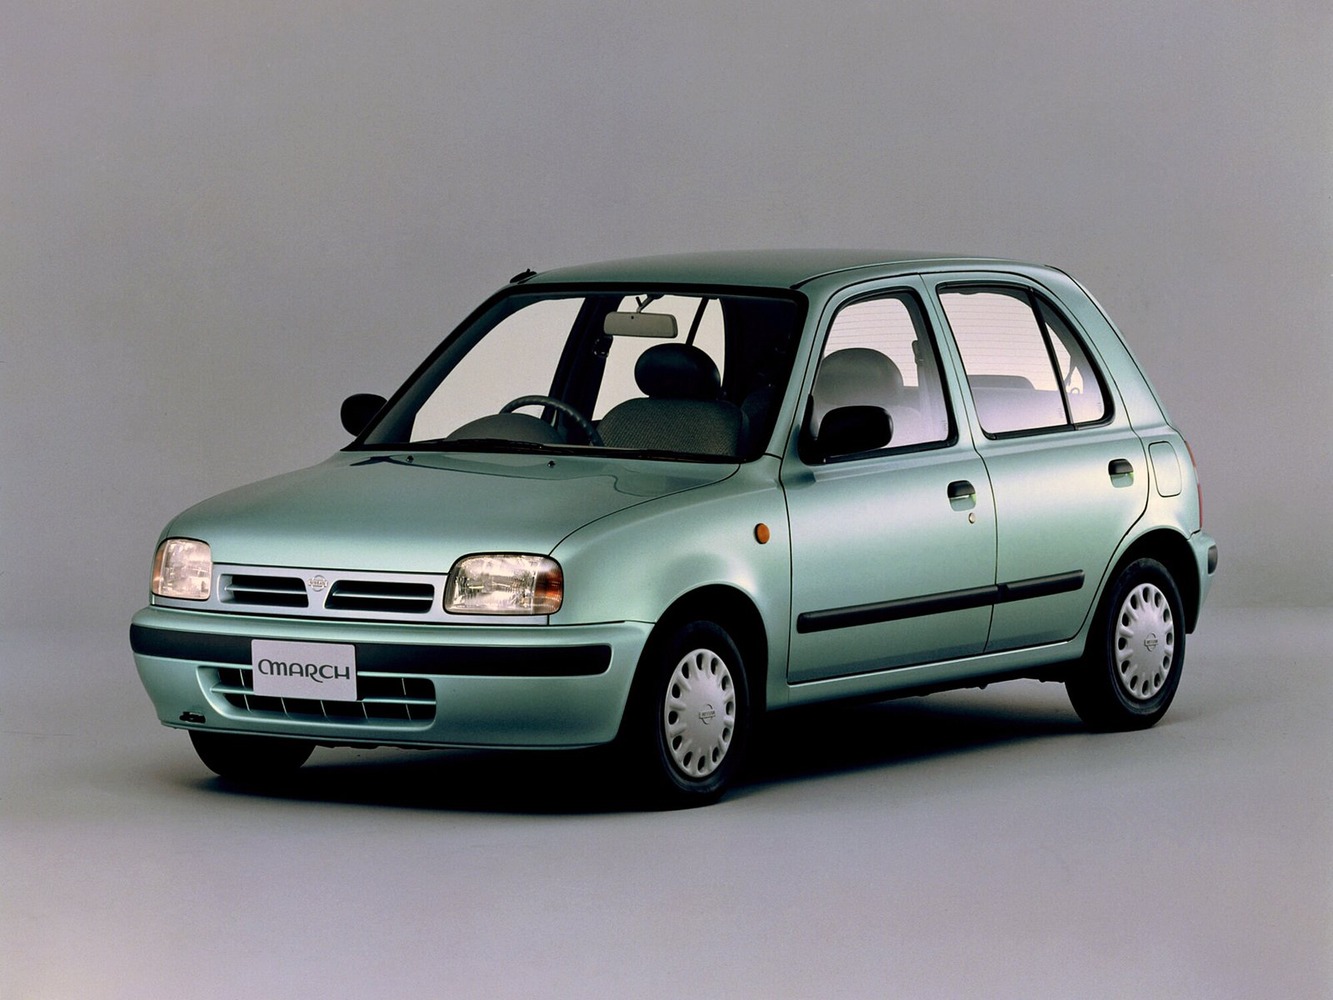 хэтчбек 5 дв. Nissan March 1991 - 2002г выпуска модификация 1.0 CVT (54 л.с.)